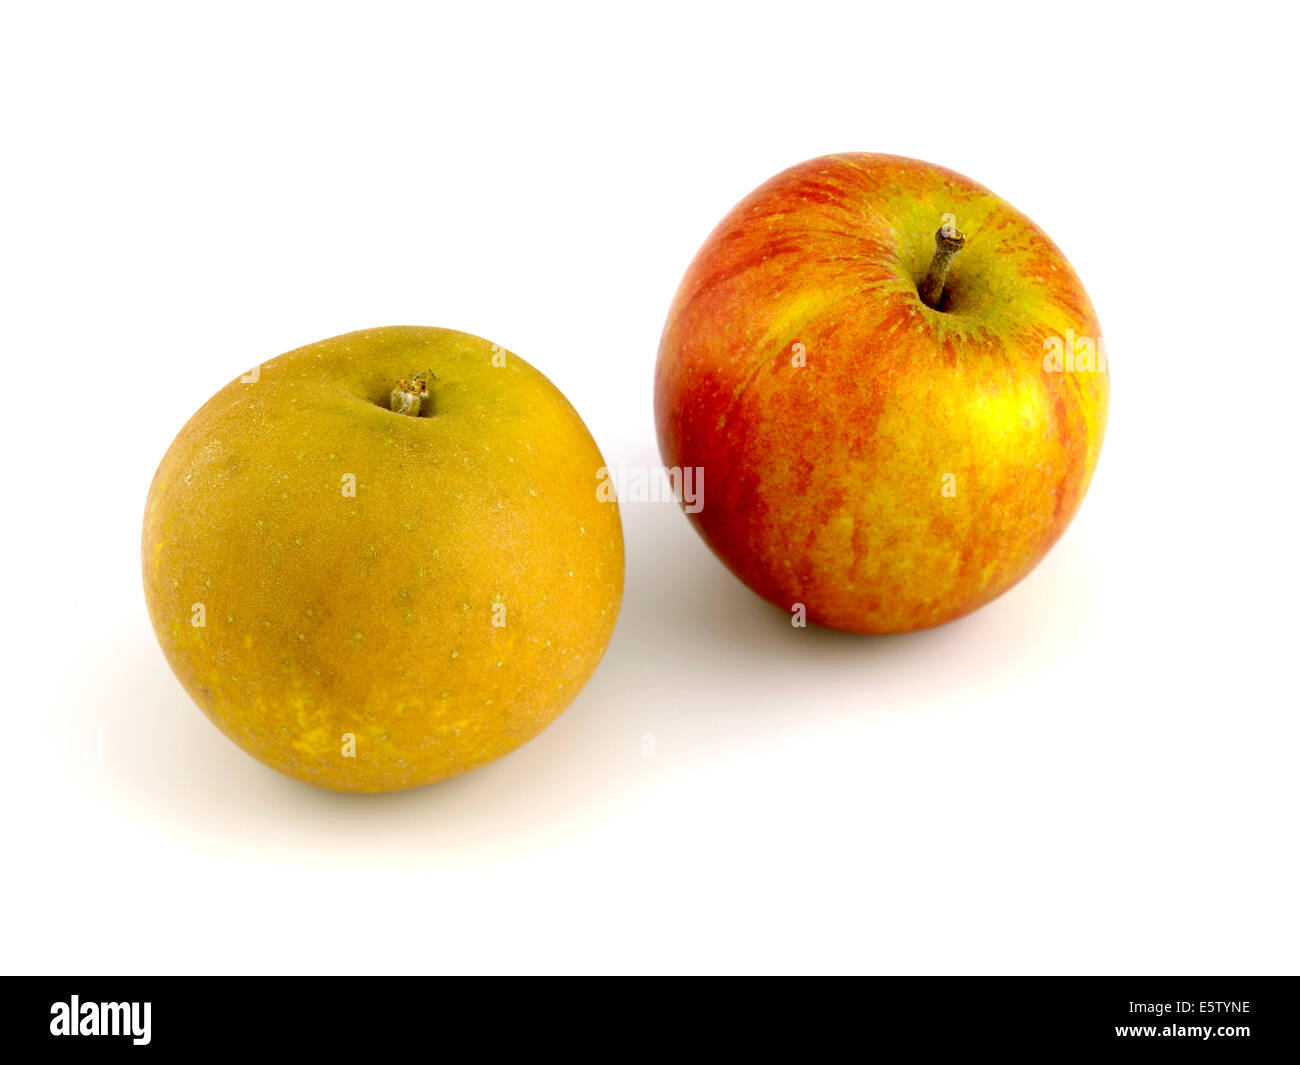 Englisch Äpfel, Egremont Russet und Cox Stockfoto